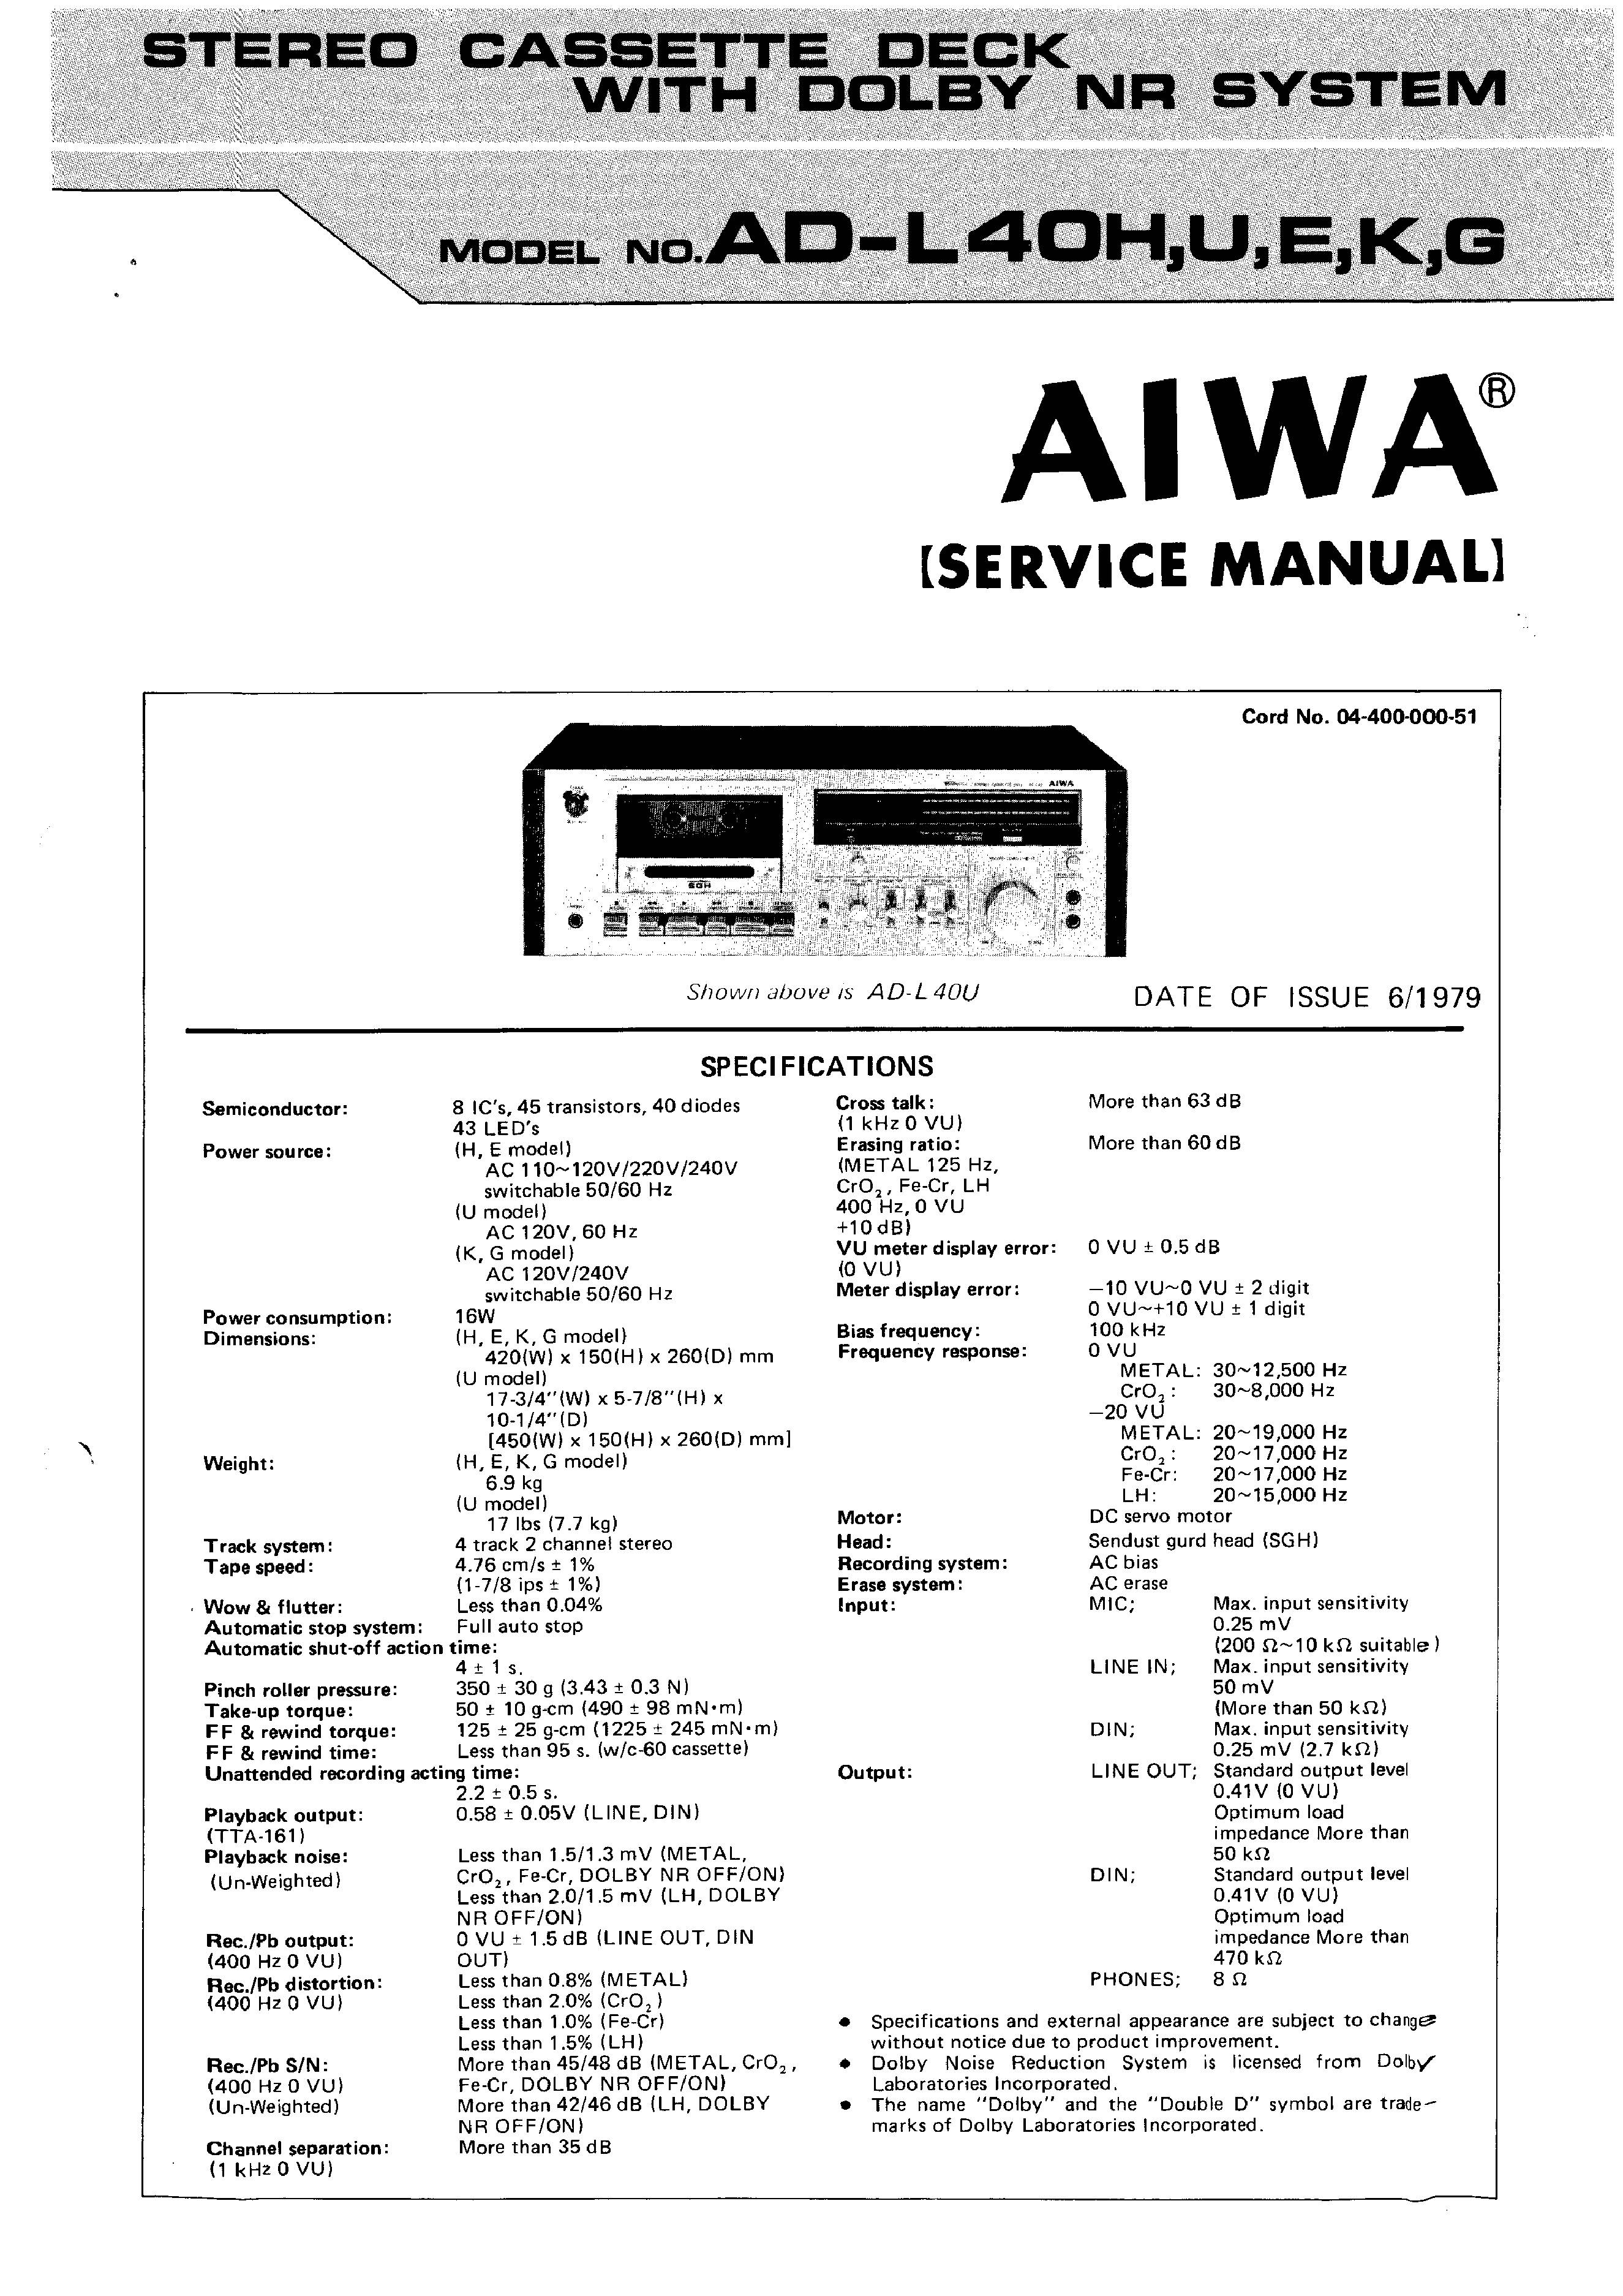 Aiwa AD-L40